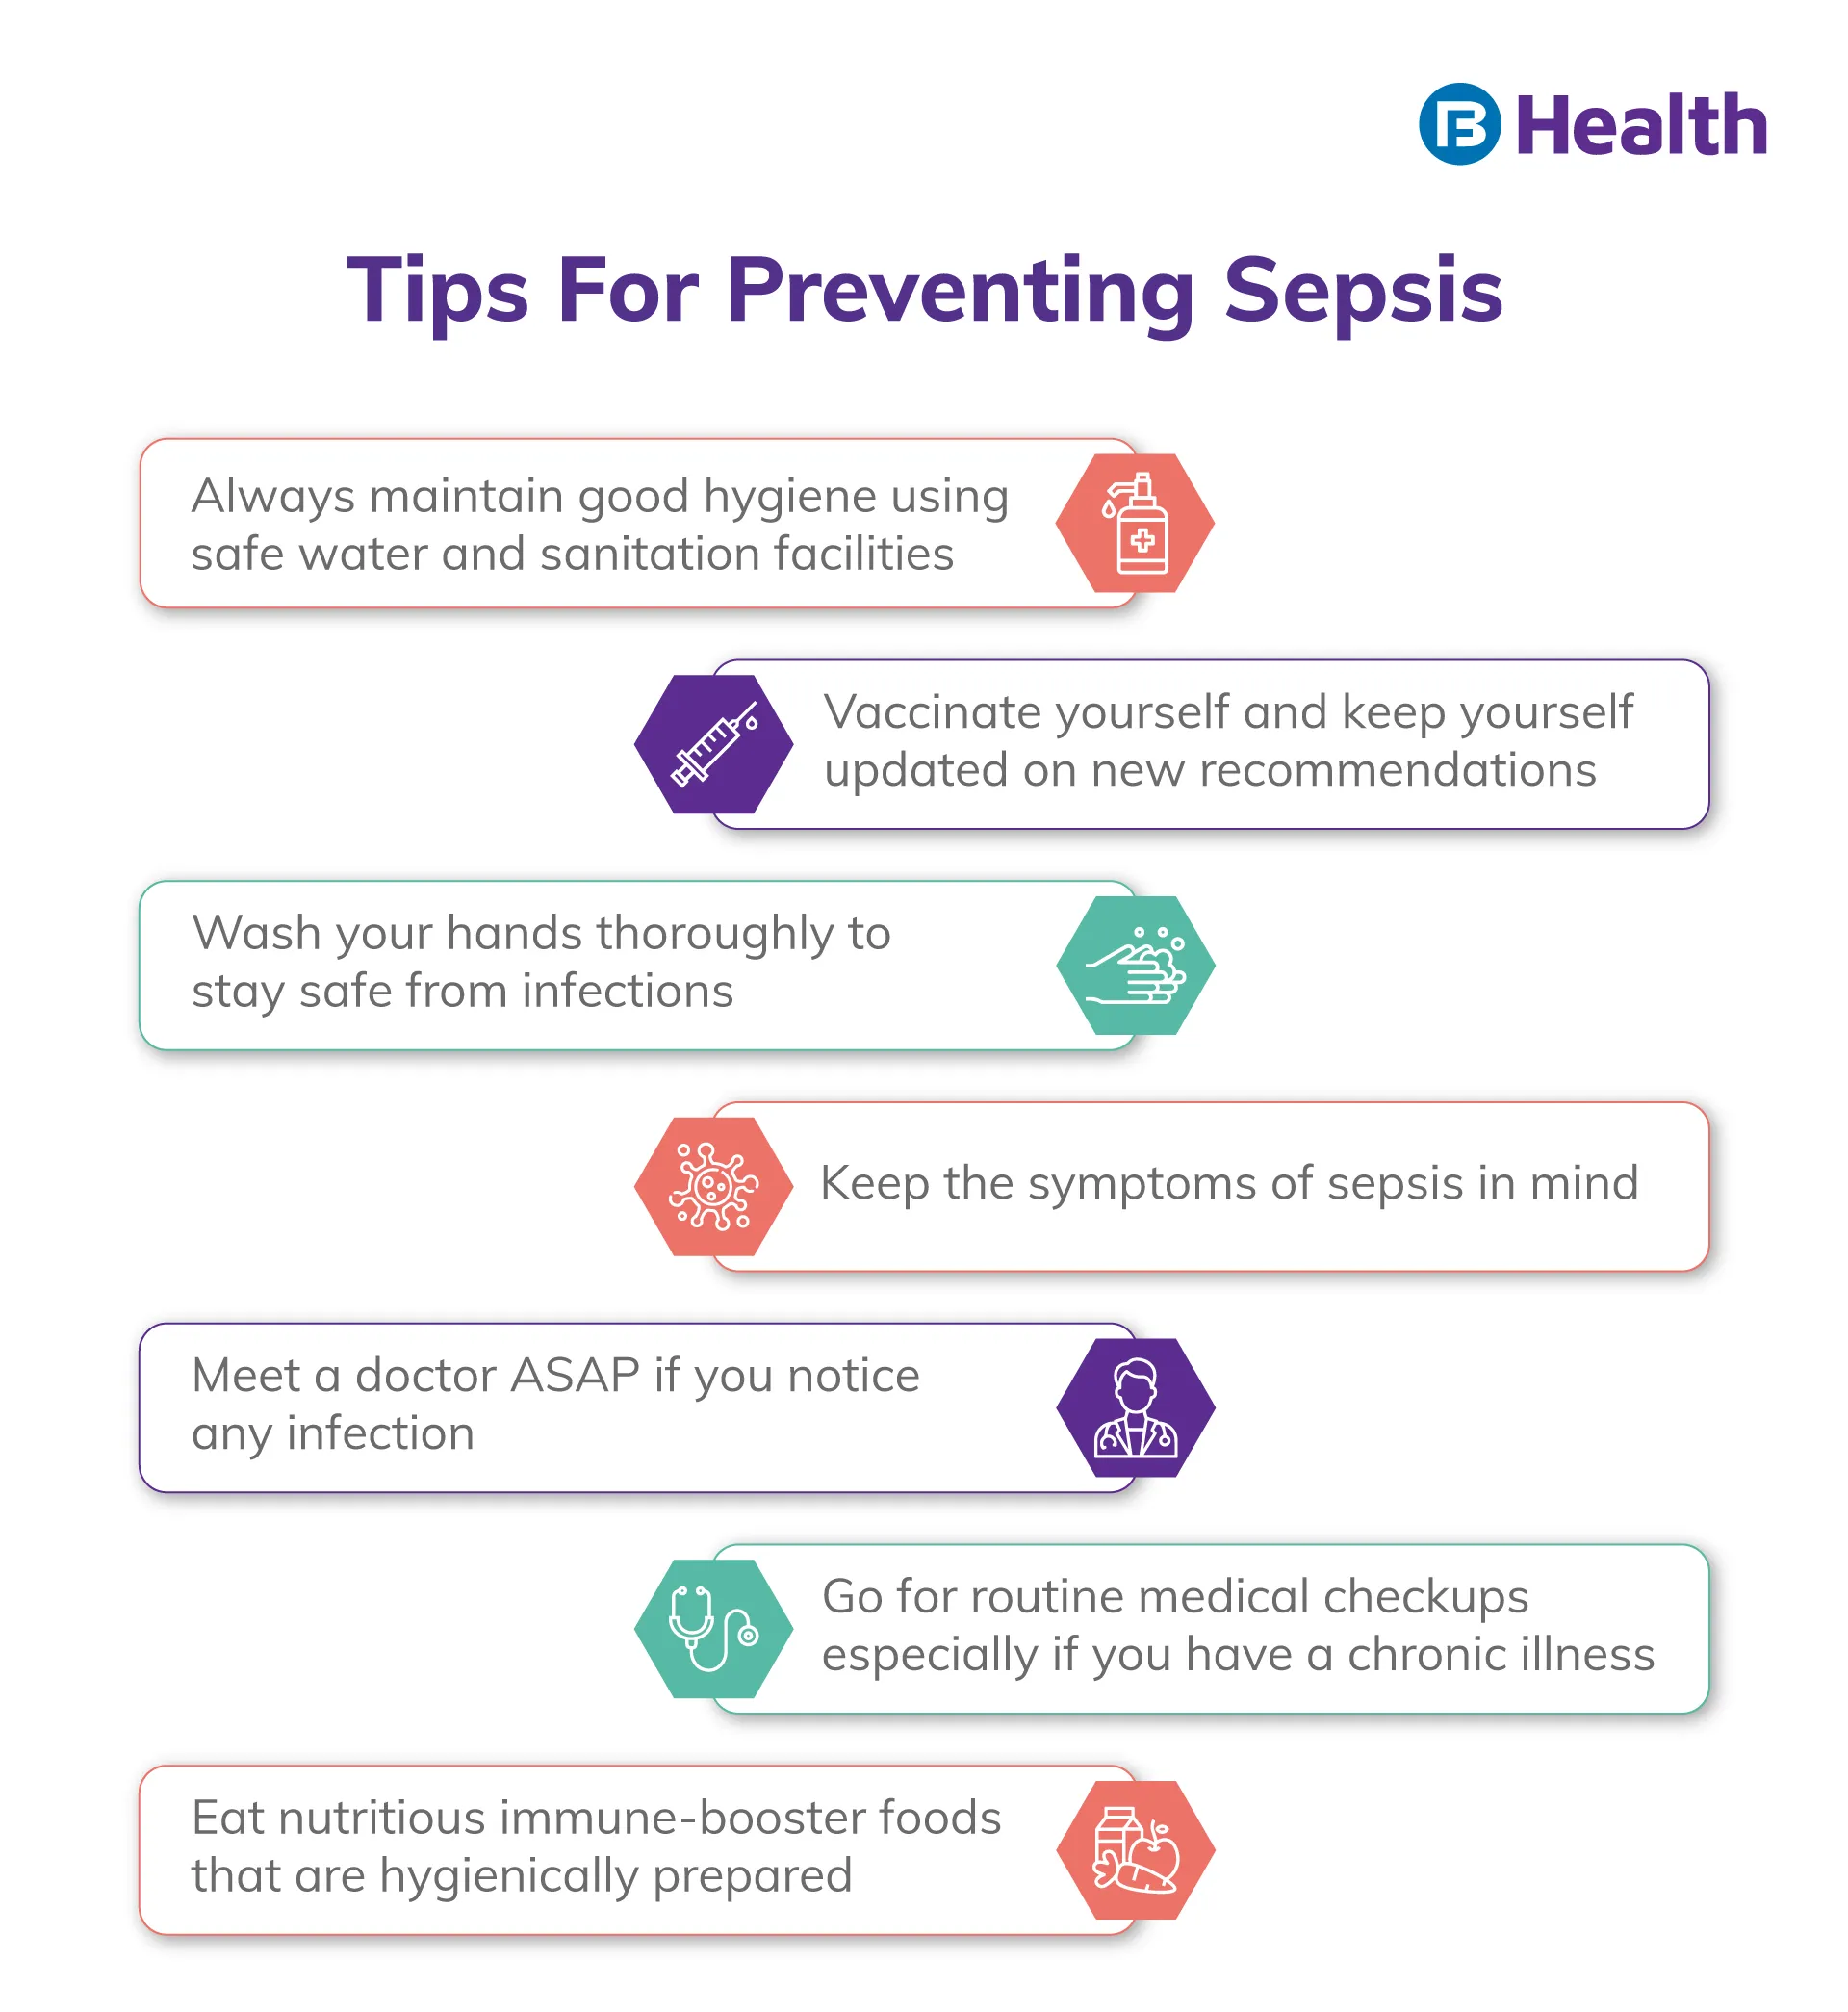 Tips for preventing sepsis